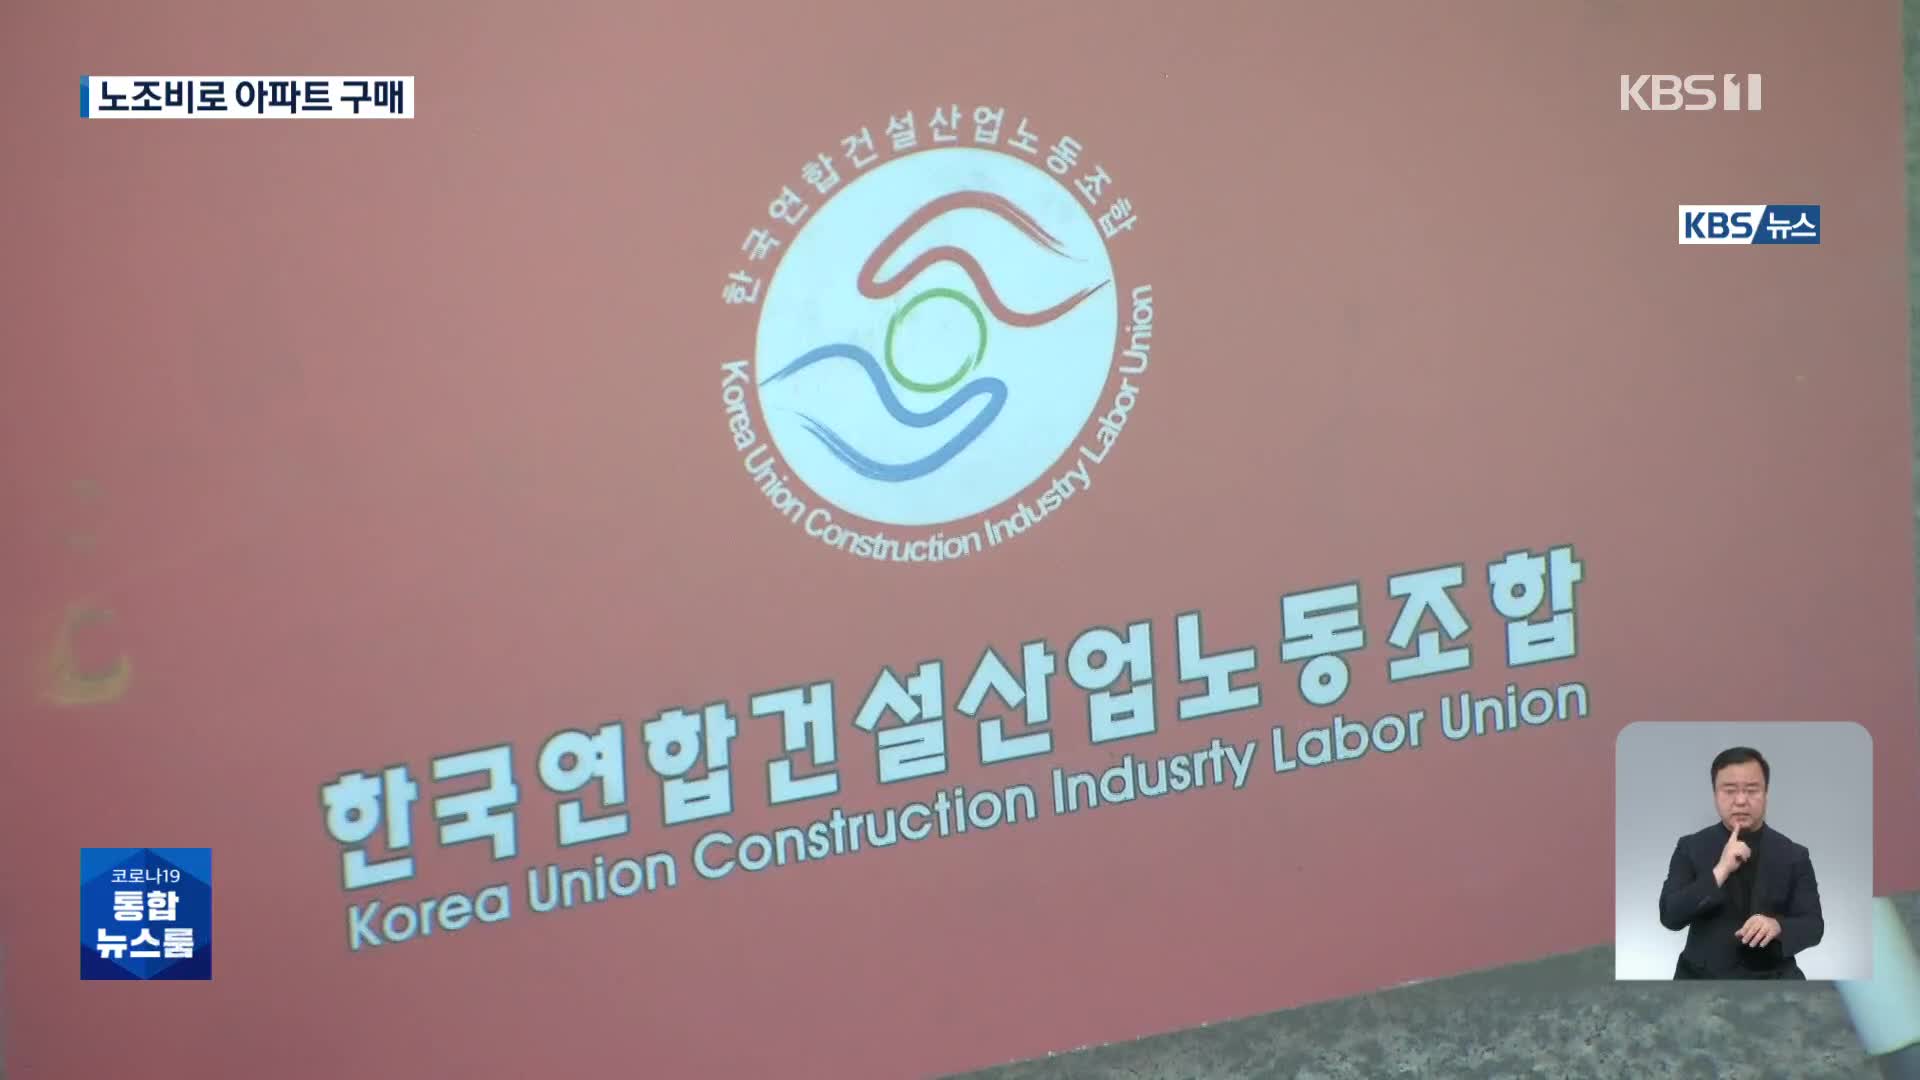 노조비로 아파트 투자까지…건설노조 위원장 ‘횡령 의혹’ 수사